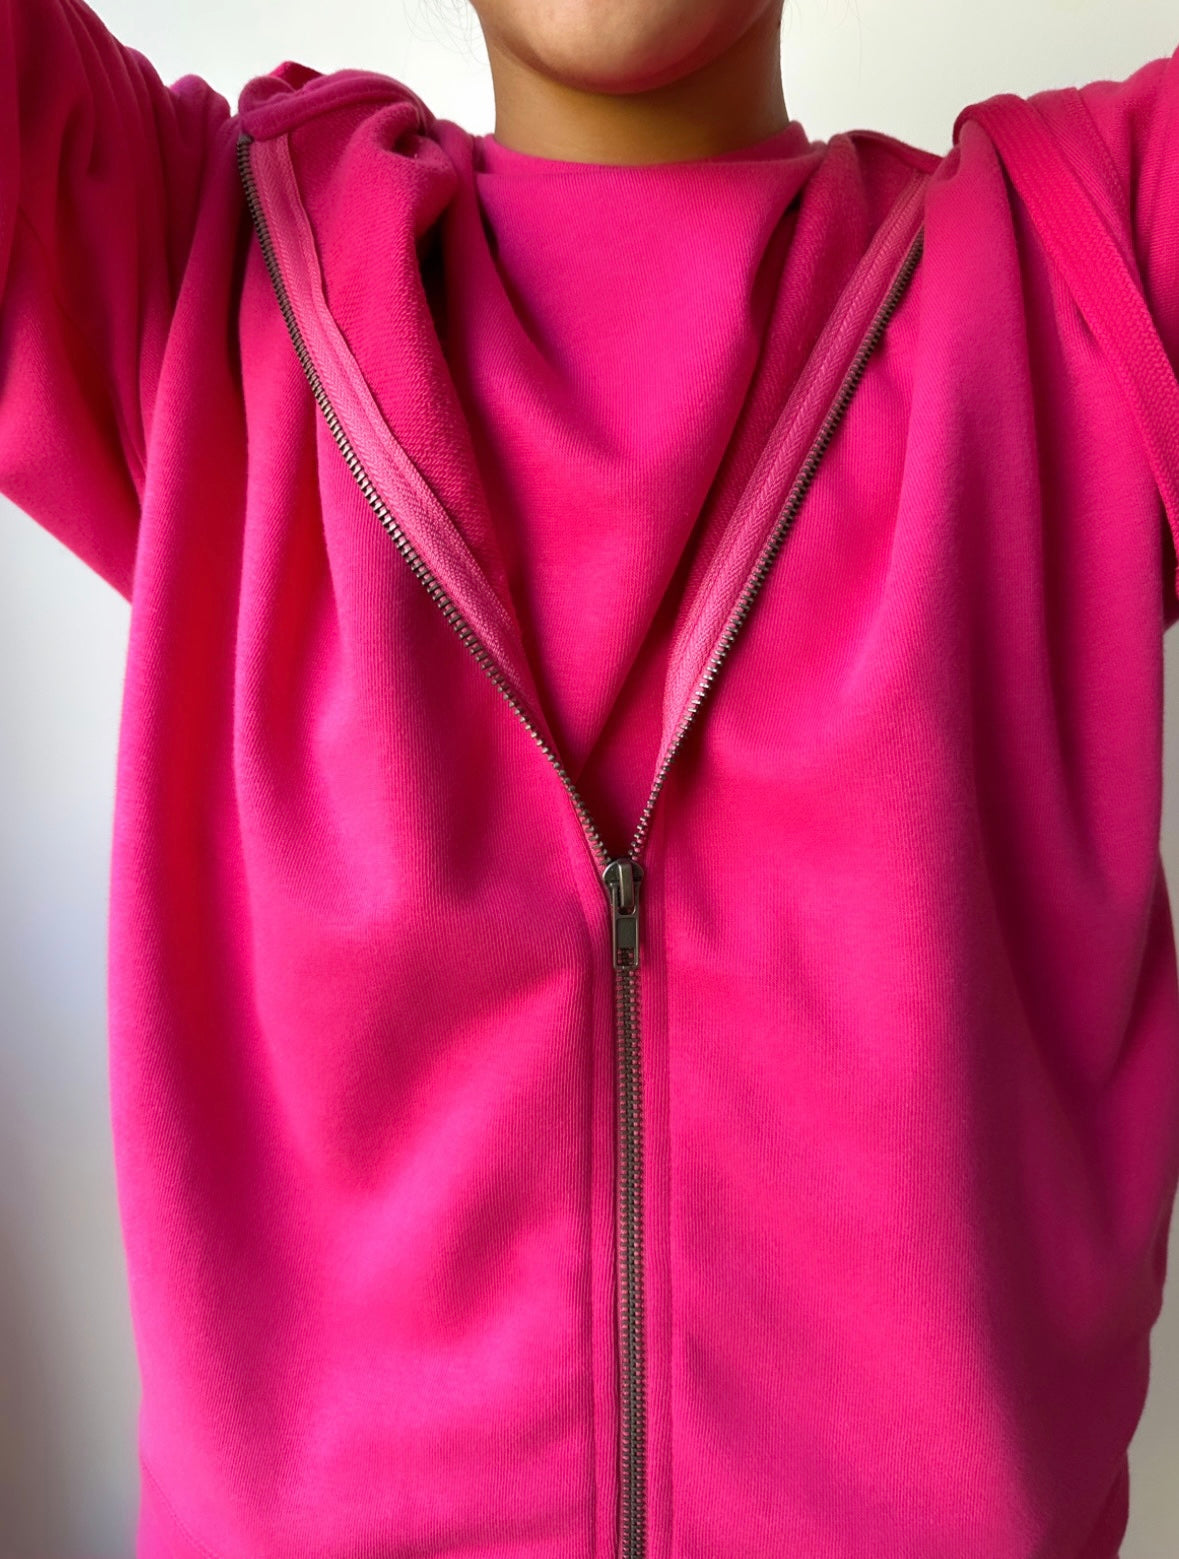 The Zipped Hoodie in Vivid Pink